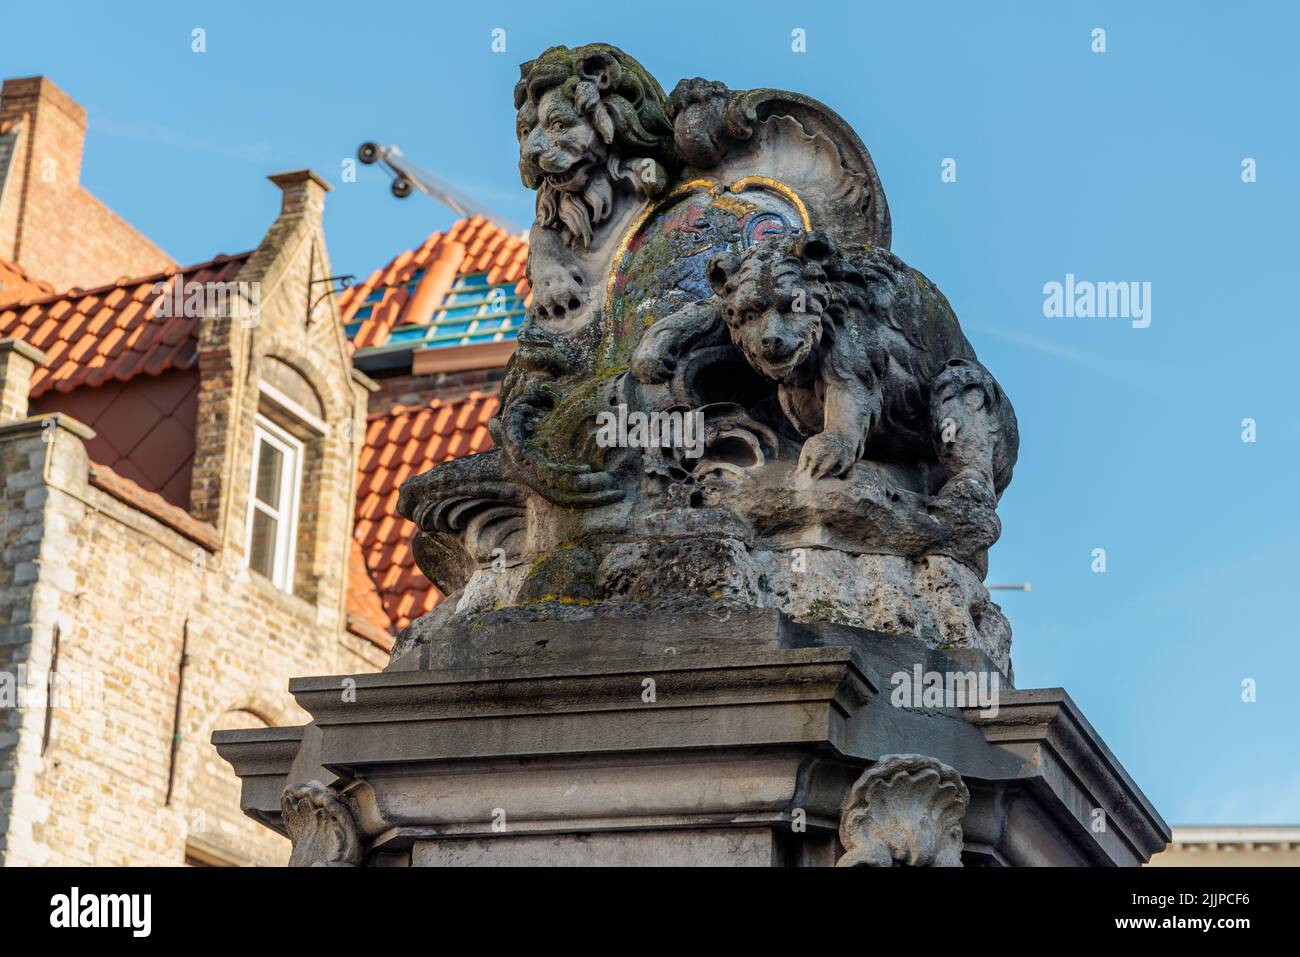 La célèbre statue de Brugge avec le Lion et l'ours à Brugge, Belgique Banque D'Images